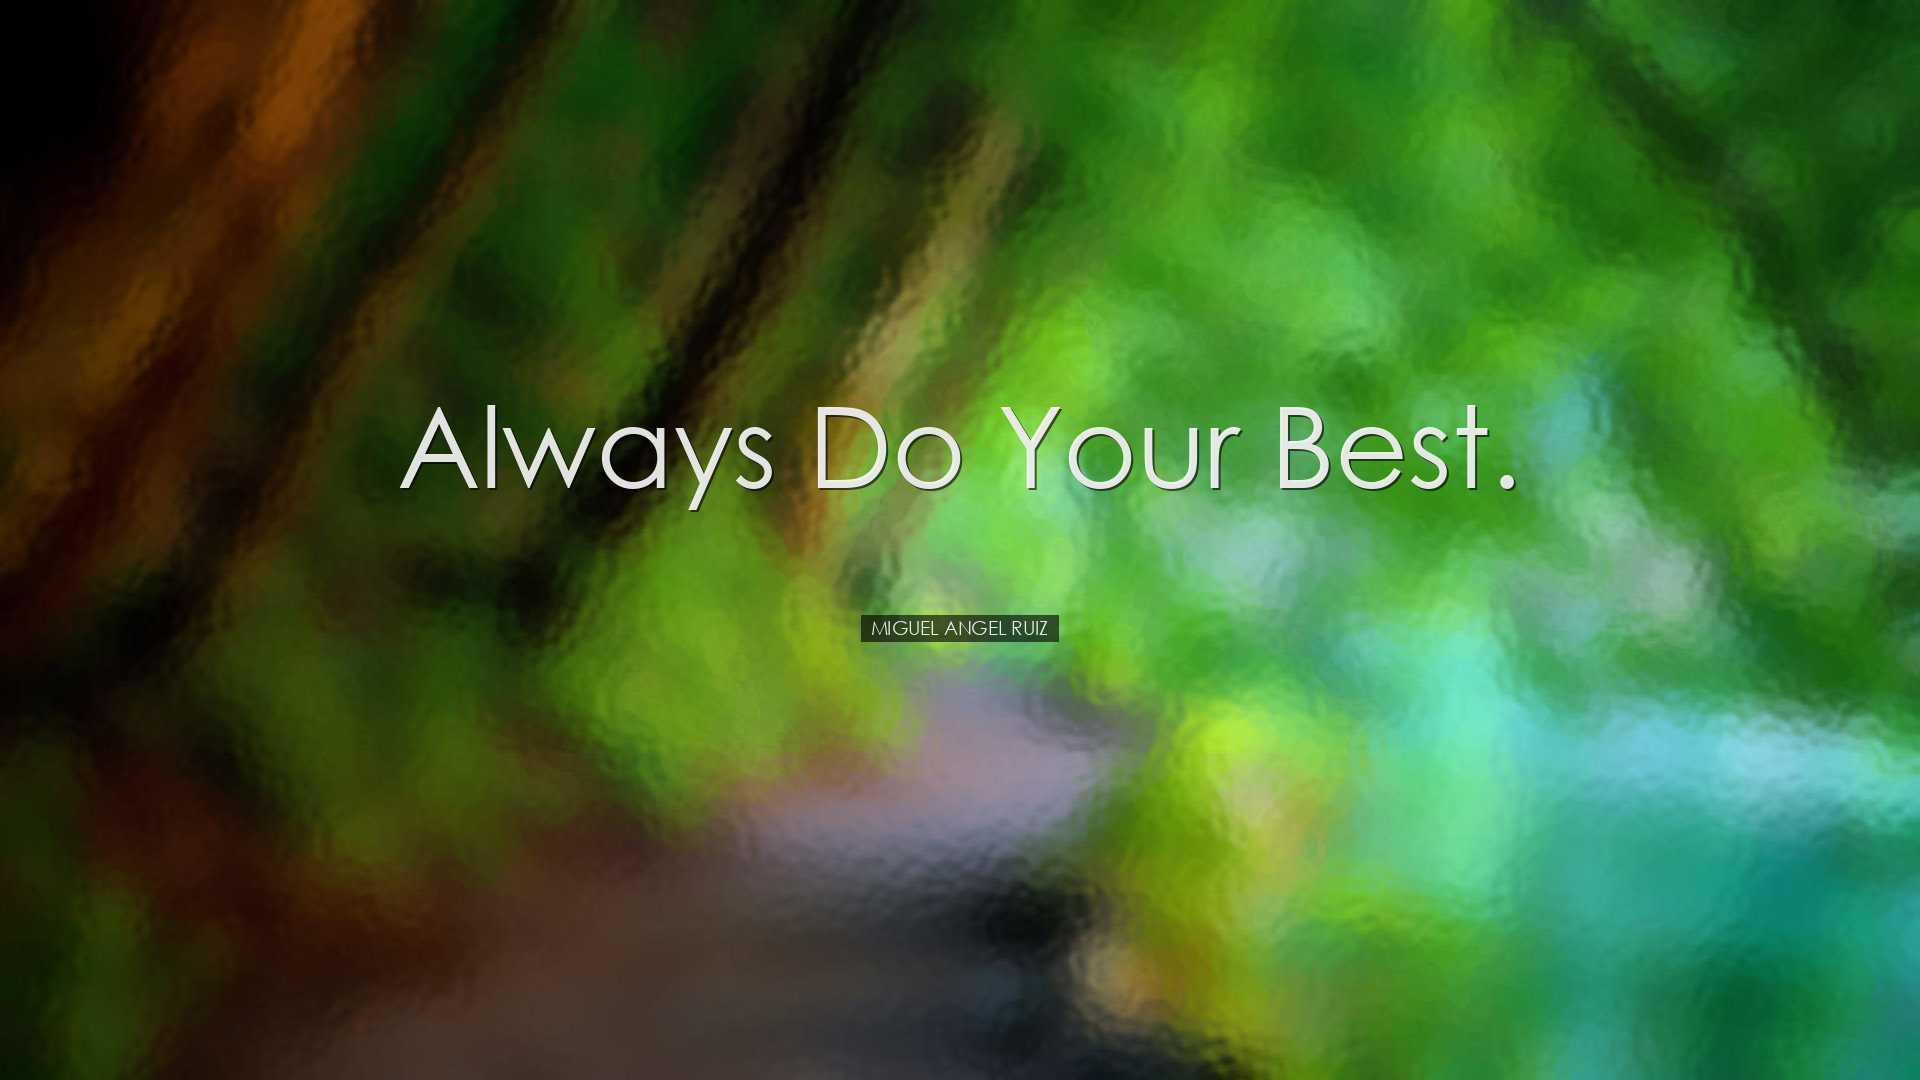 Always do your best. - Miguel Angel Ruiz